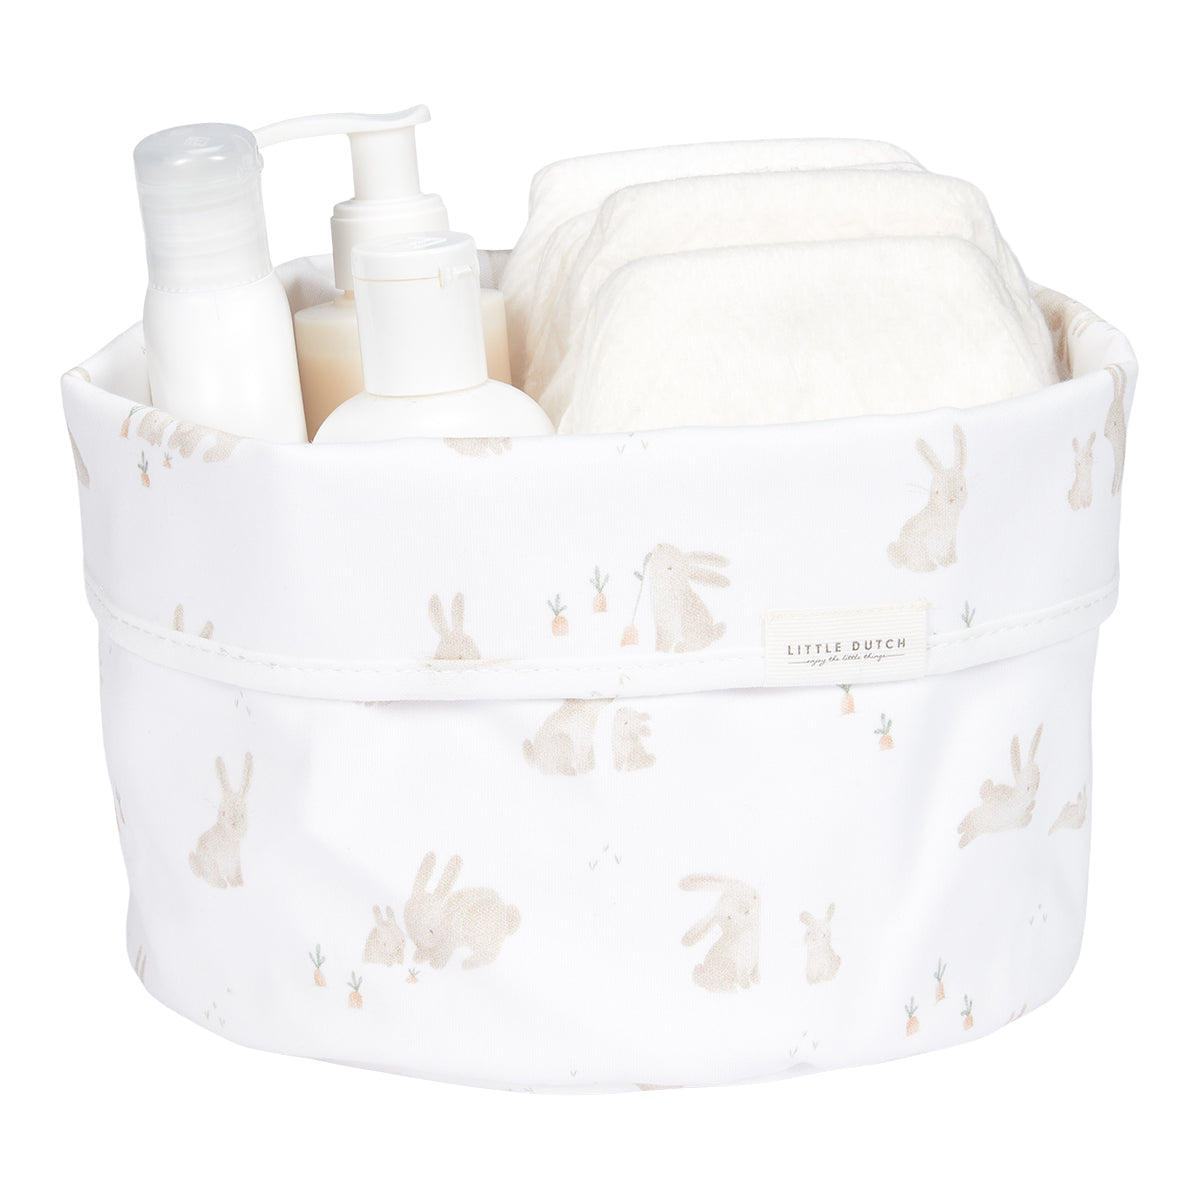 Een georganiseerde commode met het ronde commodemandje uit de collectie Baby Bunny van het merk Little Dutch. Afmeting 21x18x3 cm, kleur wit met lieve print van konijntjes. VanZus